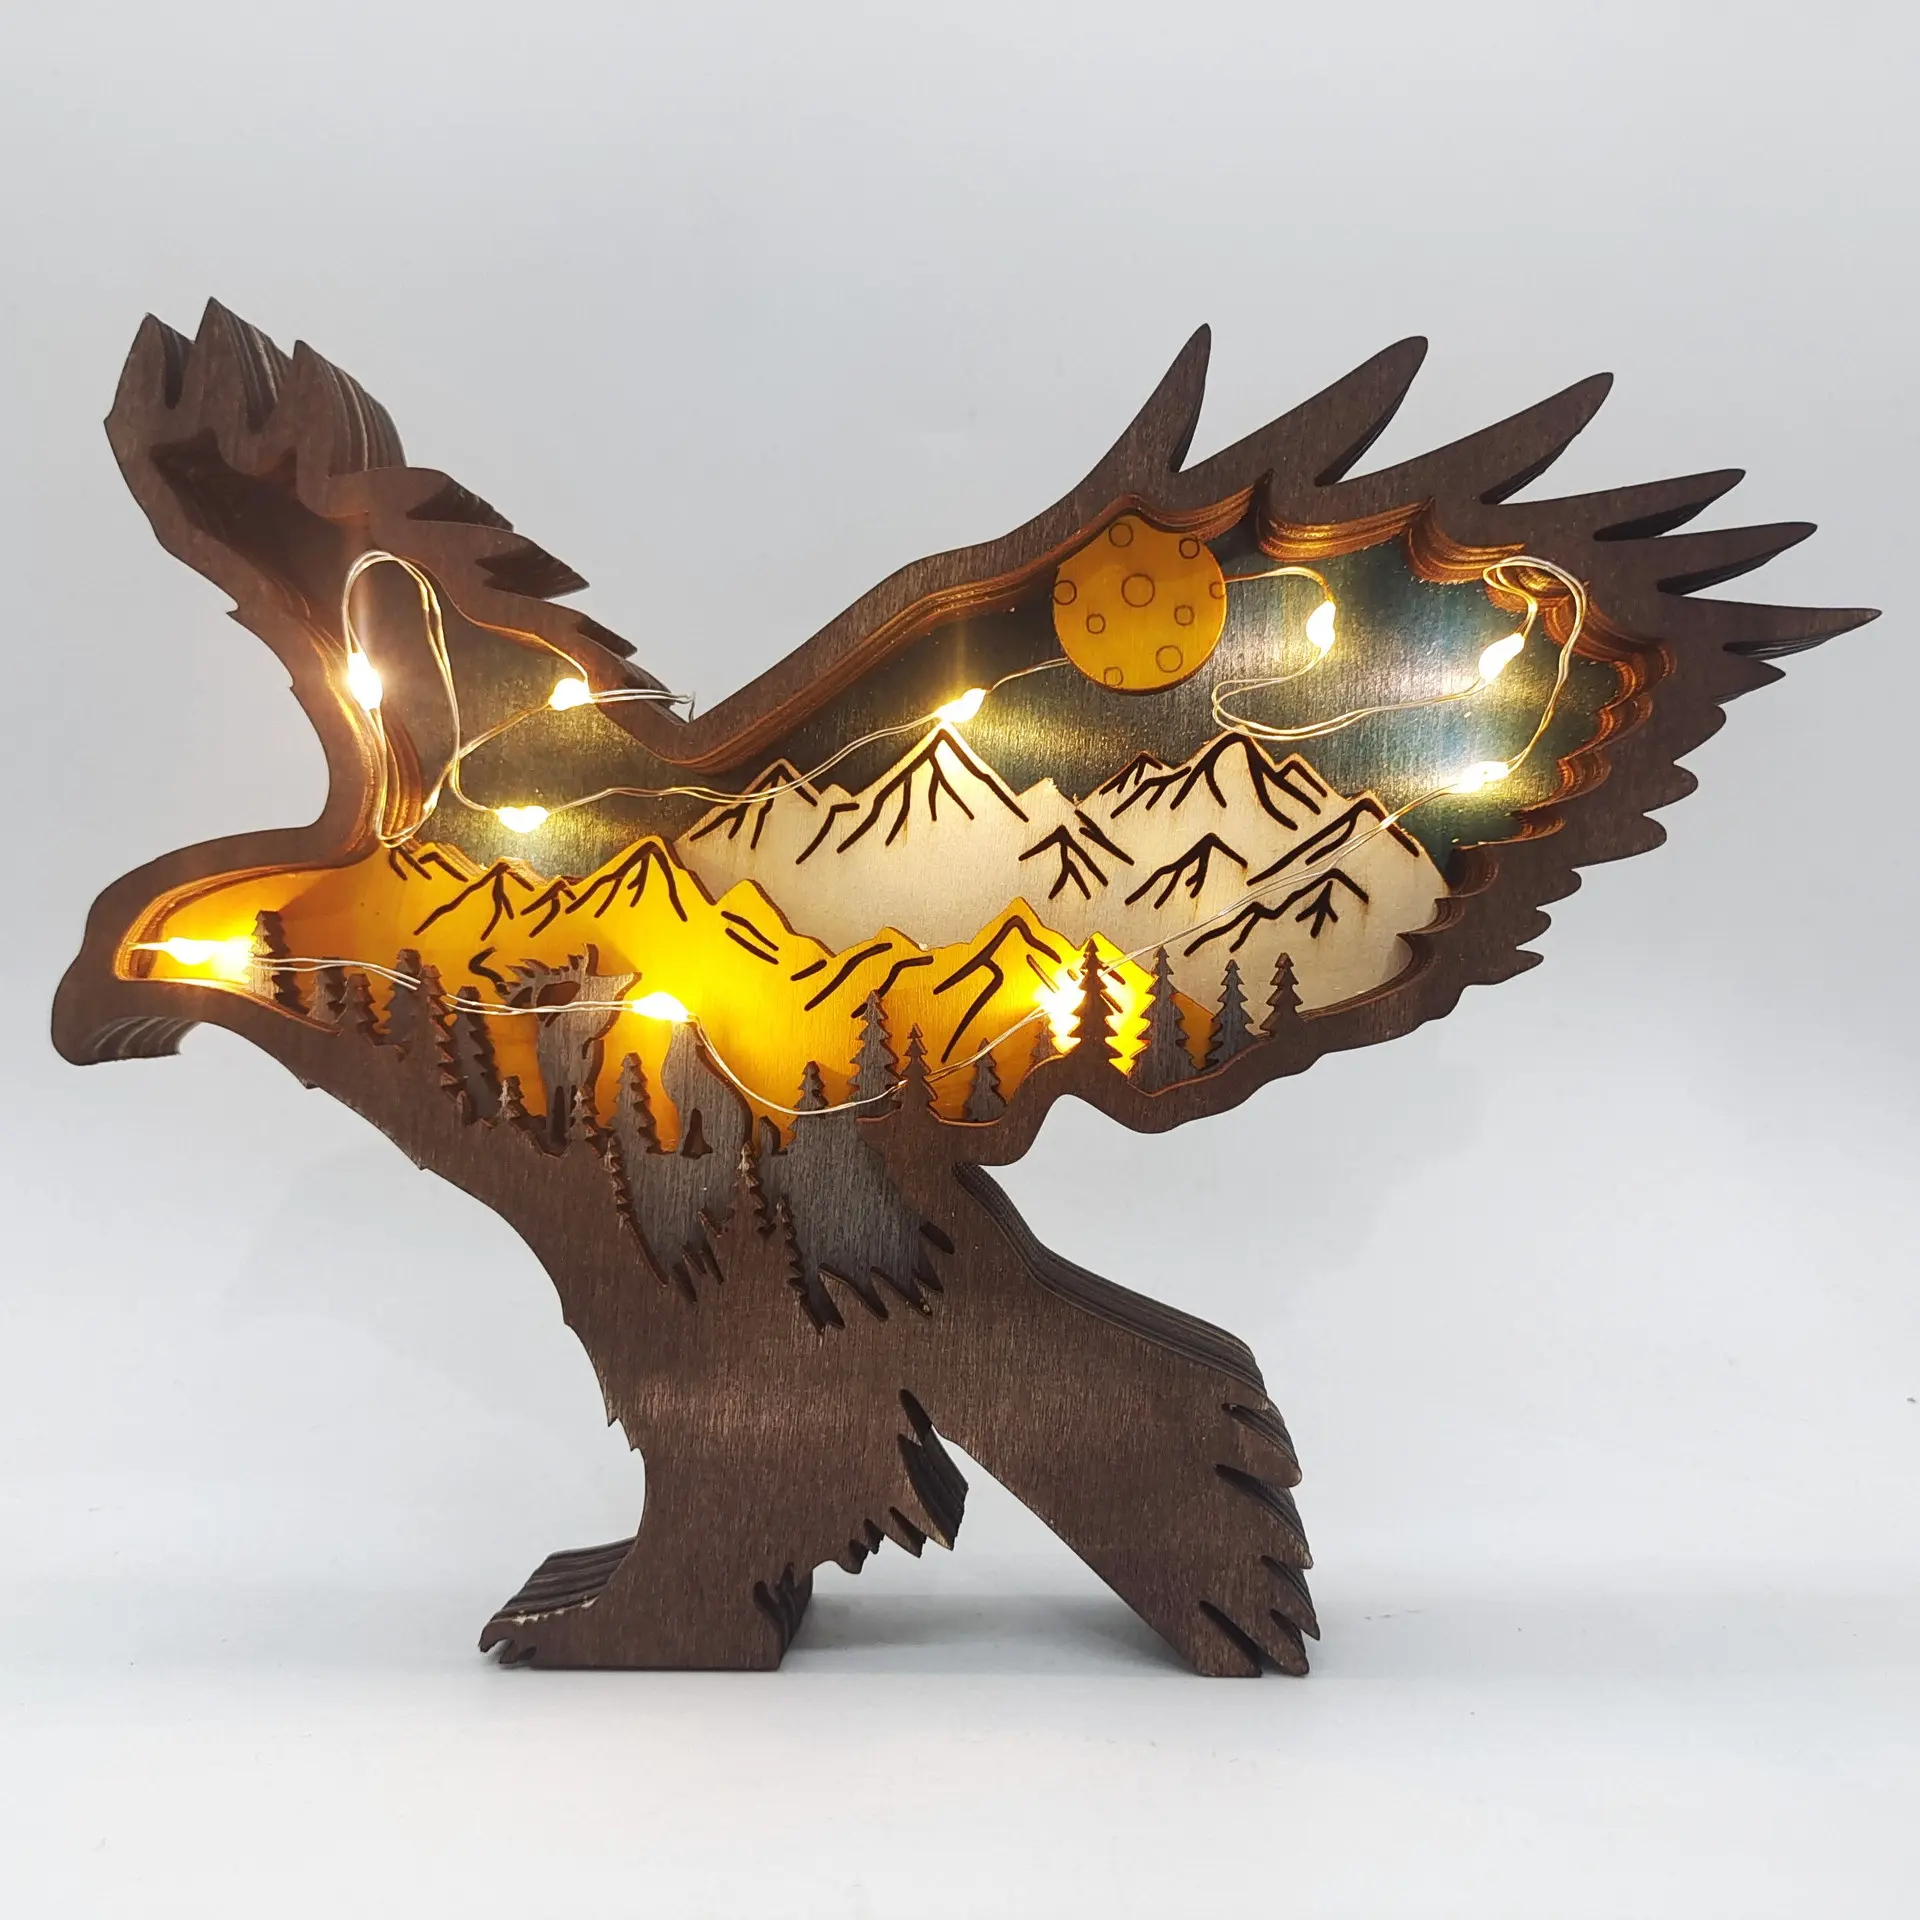 गर्म बिकने वाली लकड़ी की भेड़िया मूर्ति देहाती घर की सजावट वाले जानवर